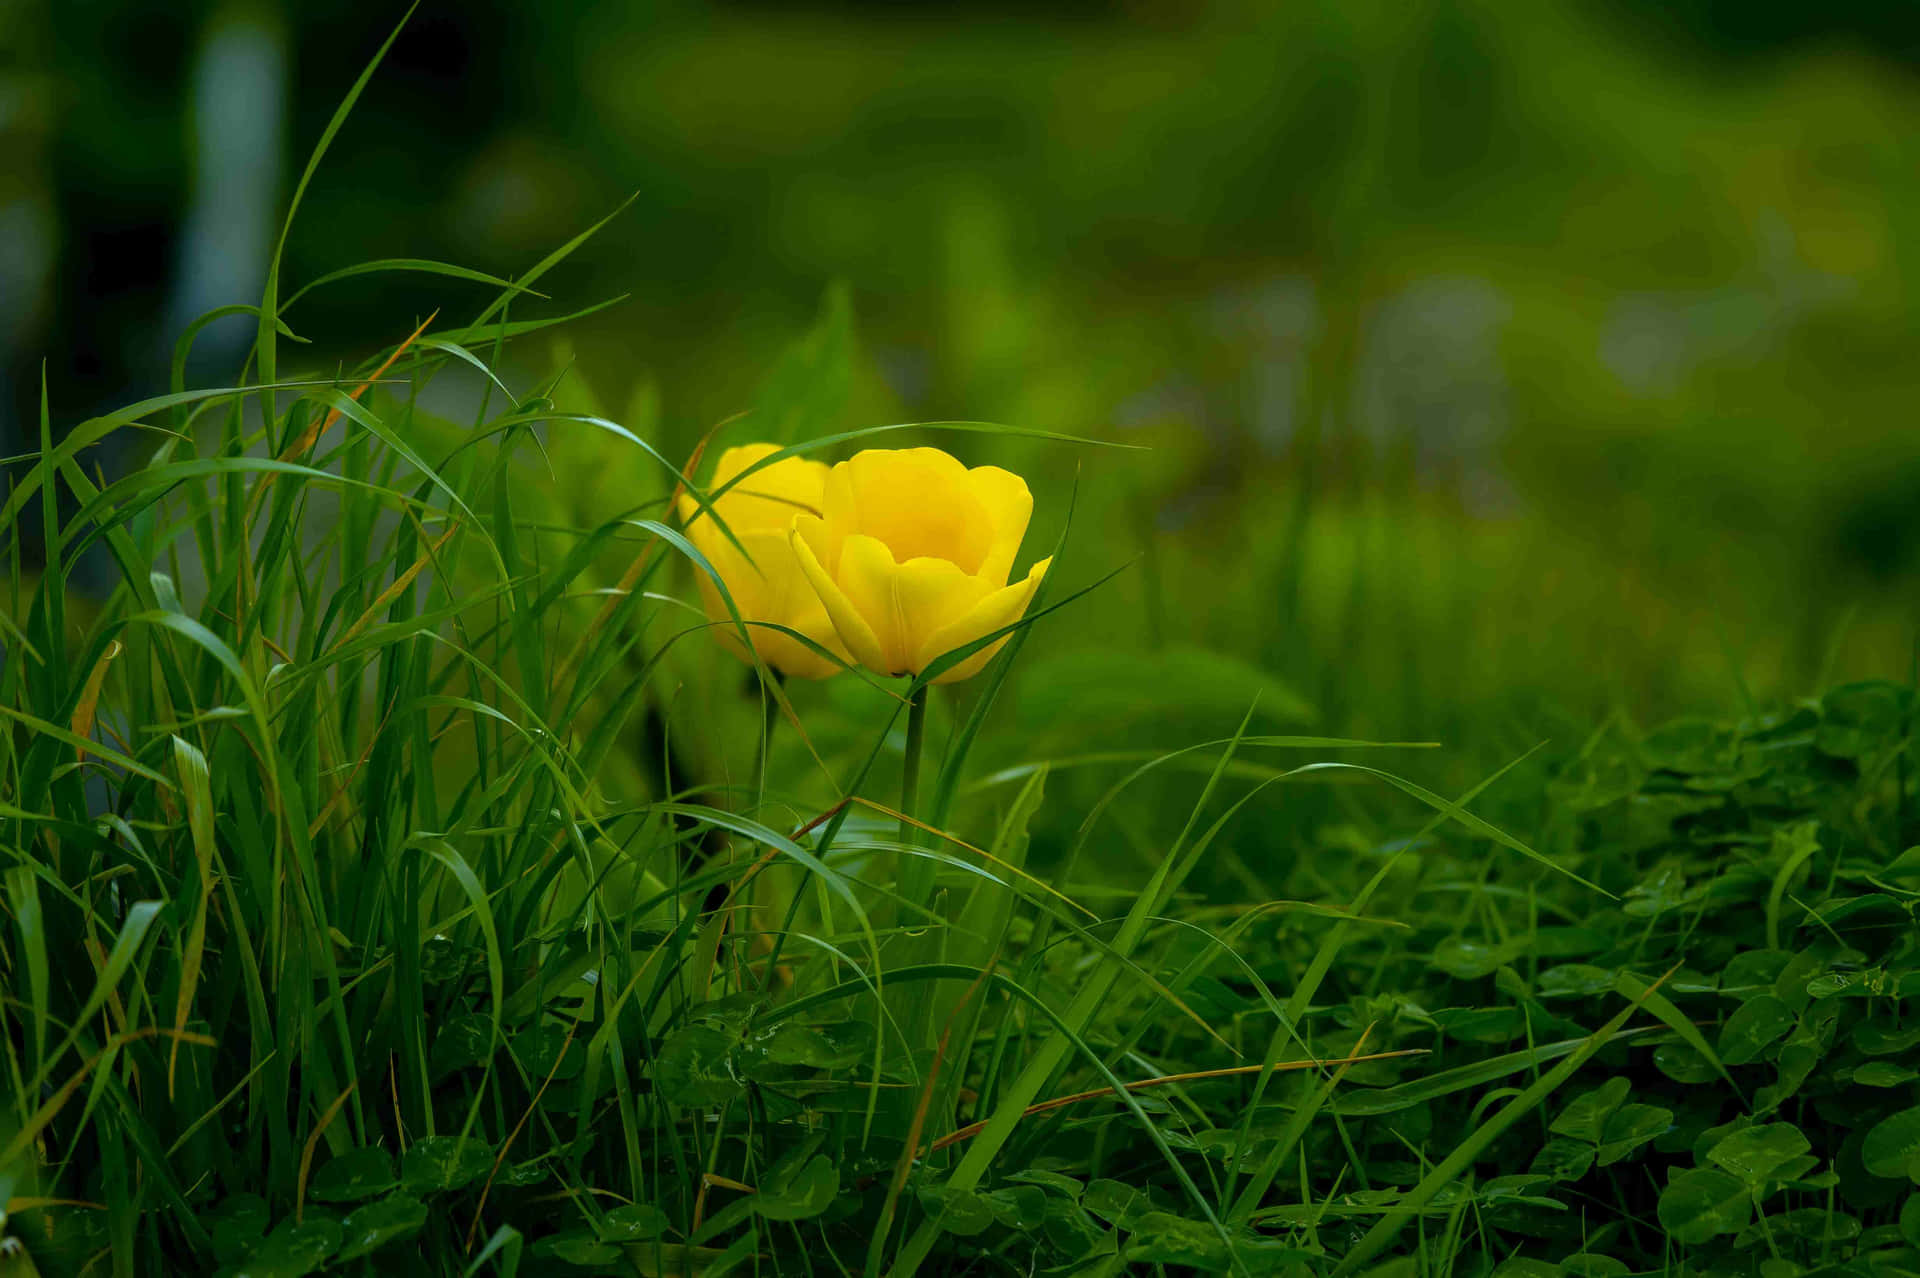 Solitary Yellow Flowerin Green Grass4 K Wallpaper